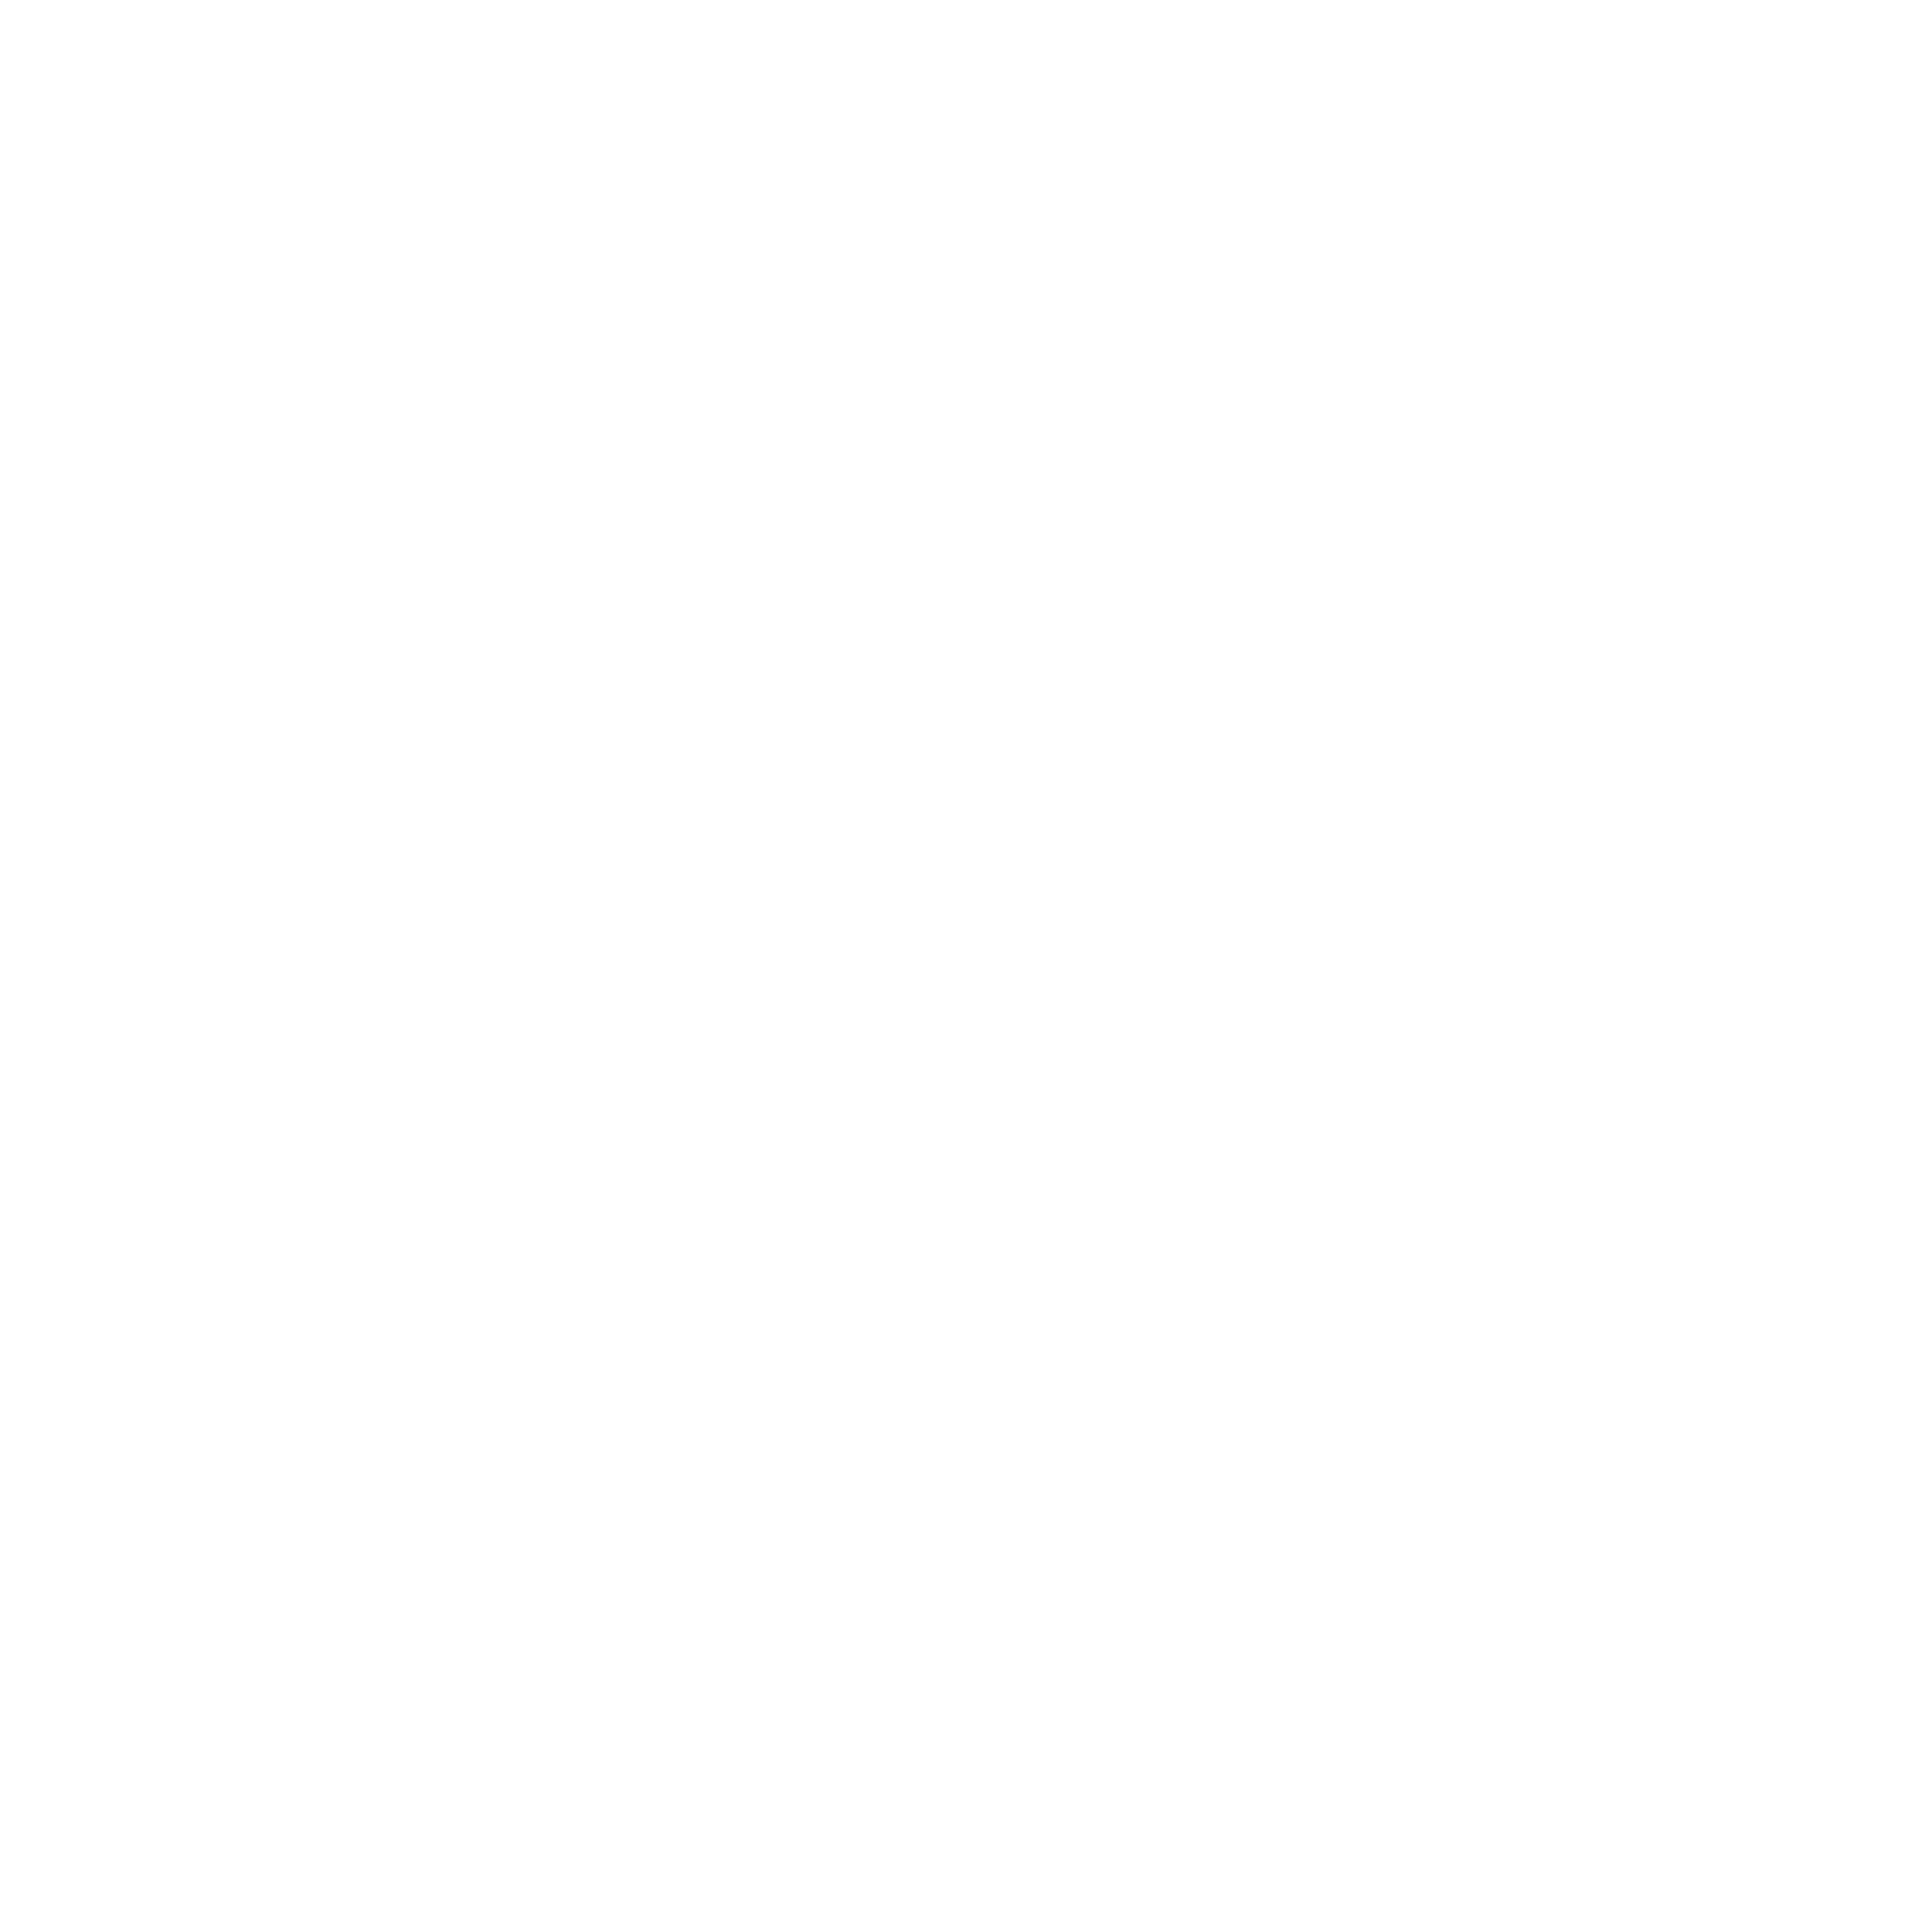 Shonie V